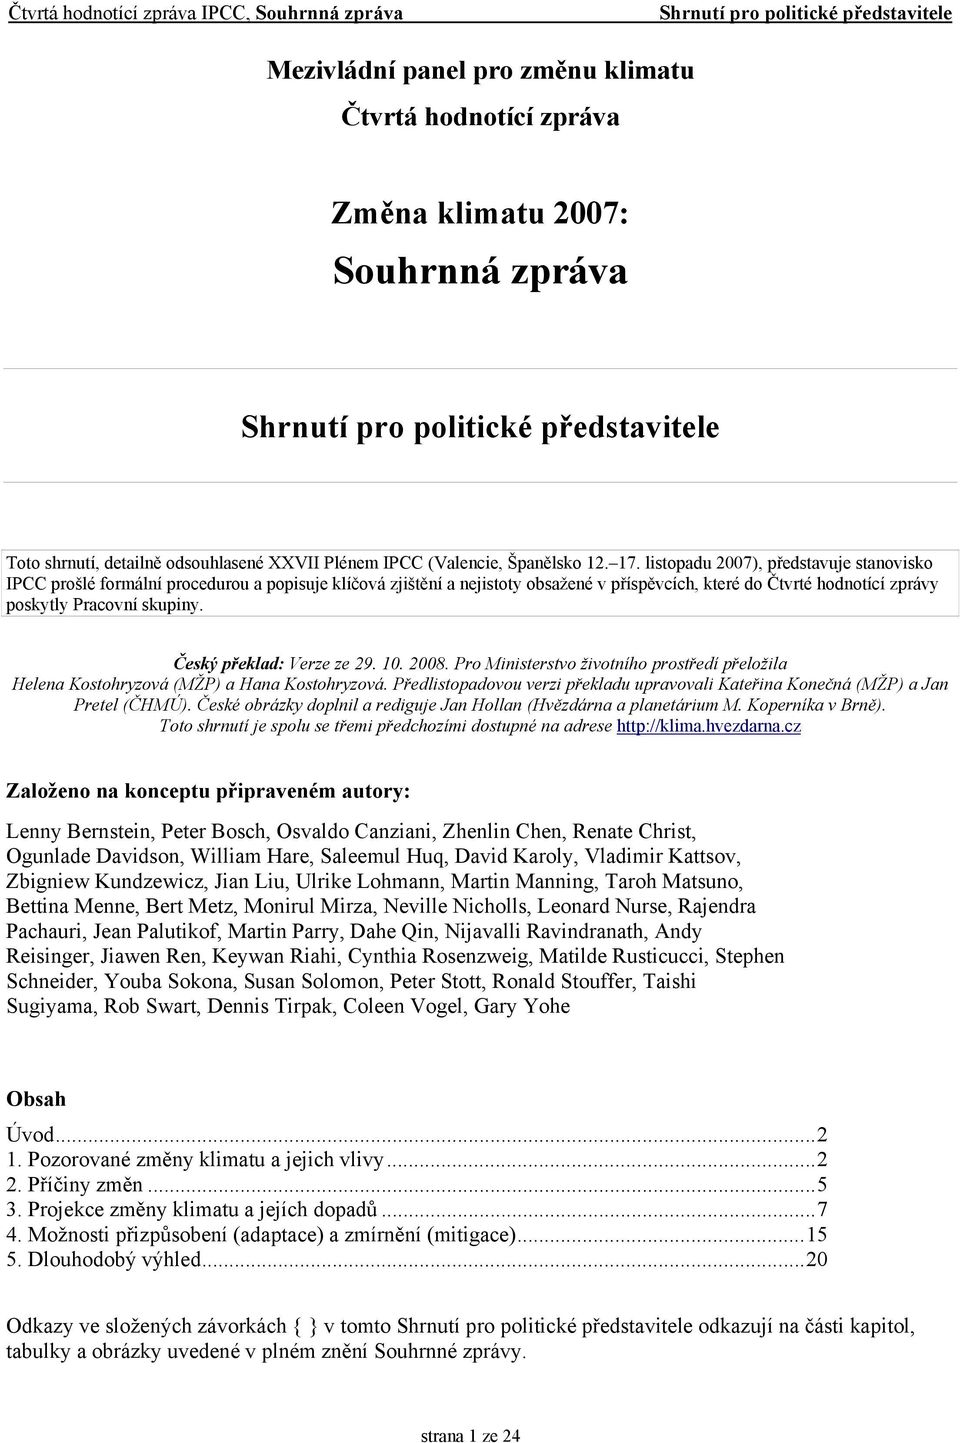 Český překlad: Verze ze 29. 10. 2008. Pro Ministerstvo životního prostředí přeložila Helena Kostohryzová (MŽP) a Hana Kostohryzová.